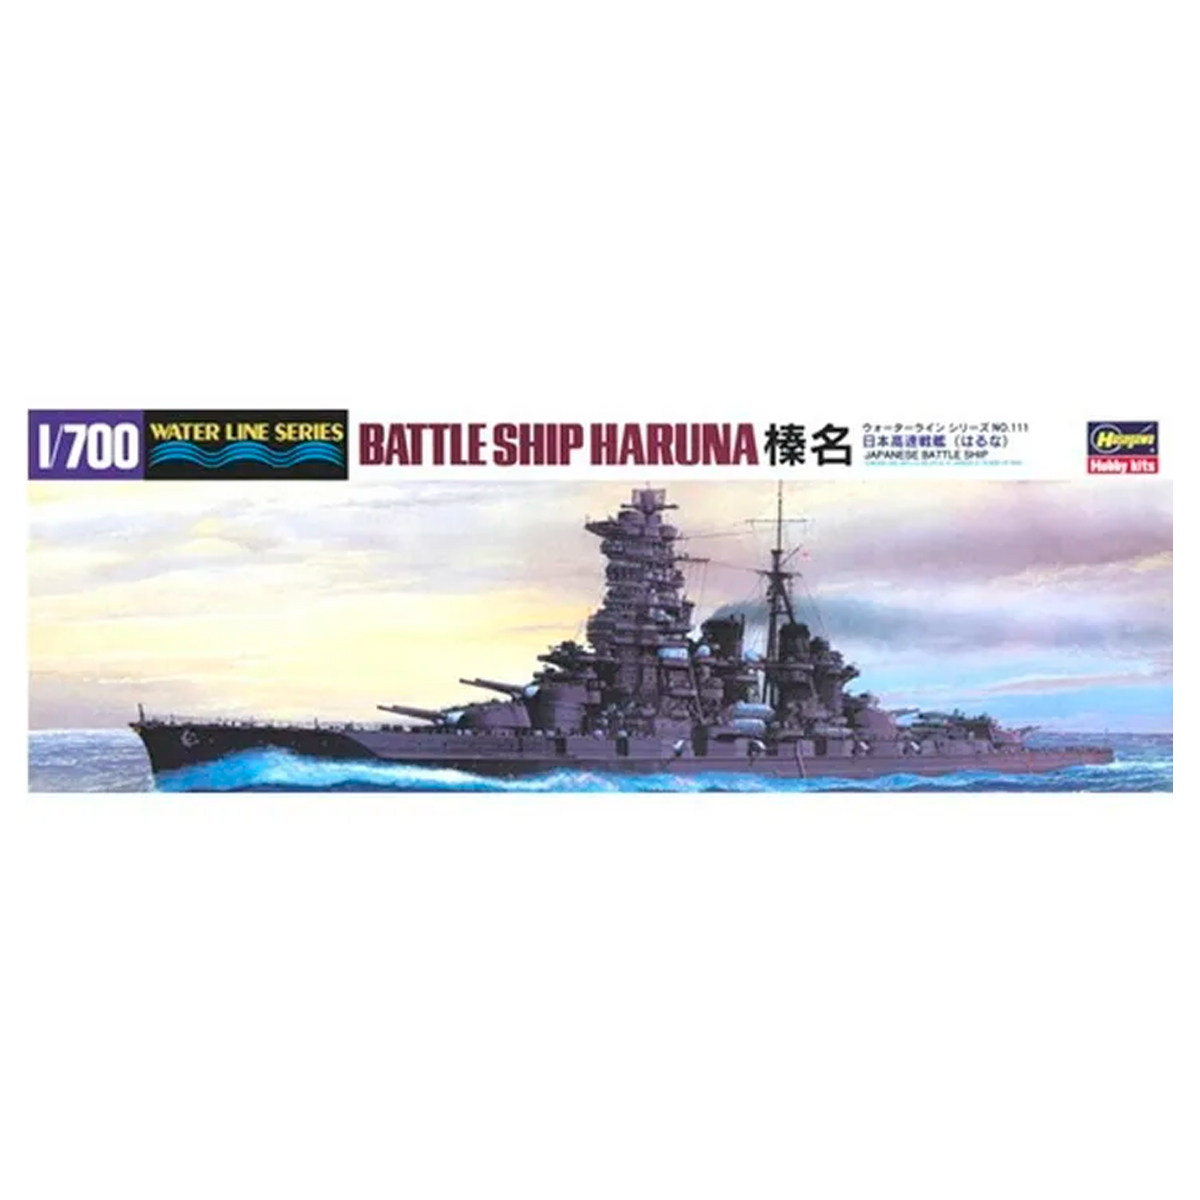 WL111-49111 1/700 Battleship Haruna